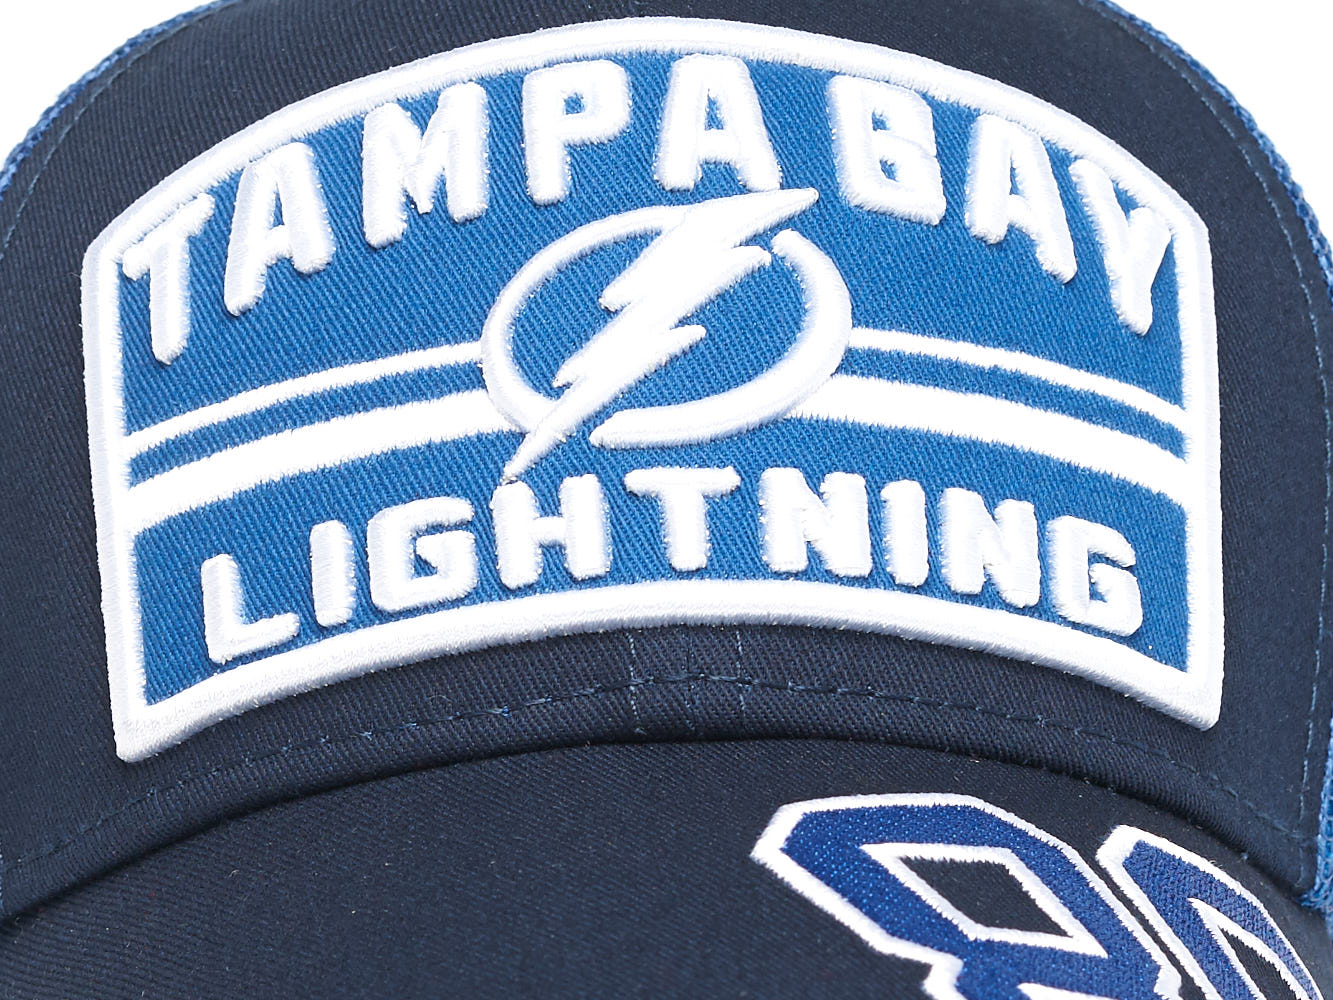  Atributika & club NHL Tampa Bay Lightning 86 31332 SR